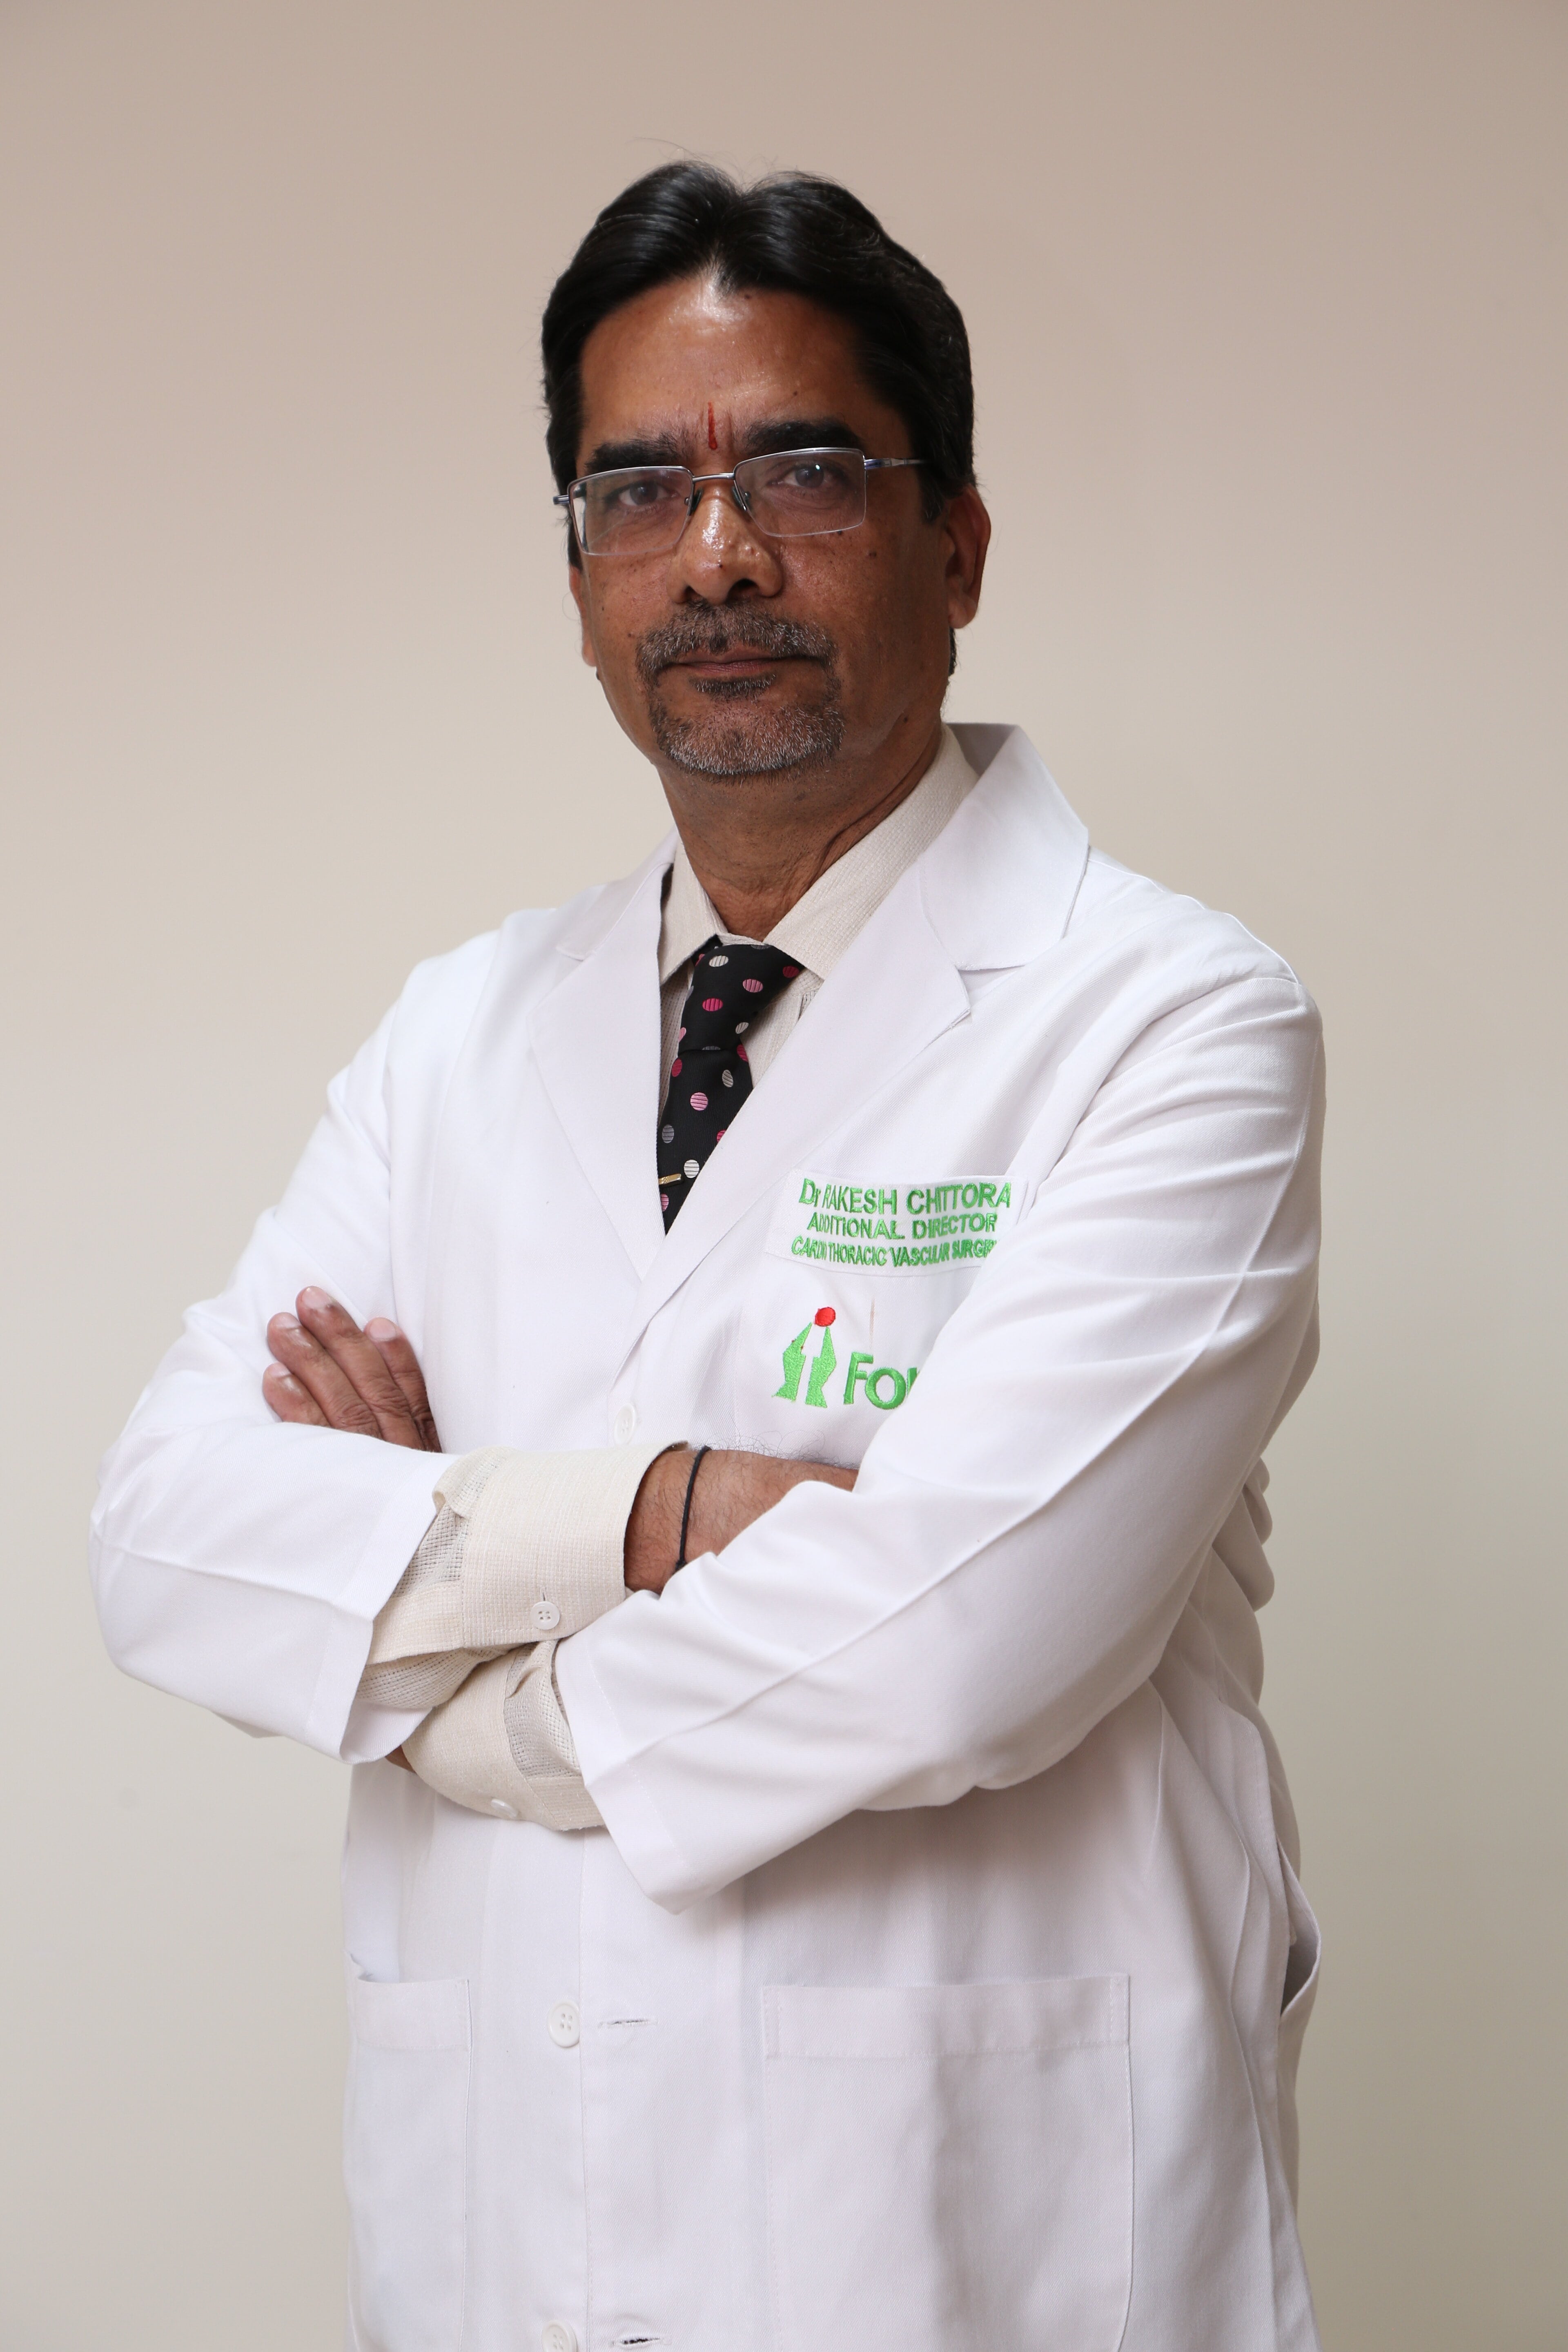 Rakesh Chittora博士